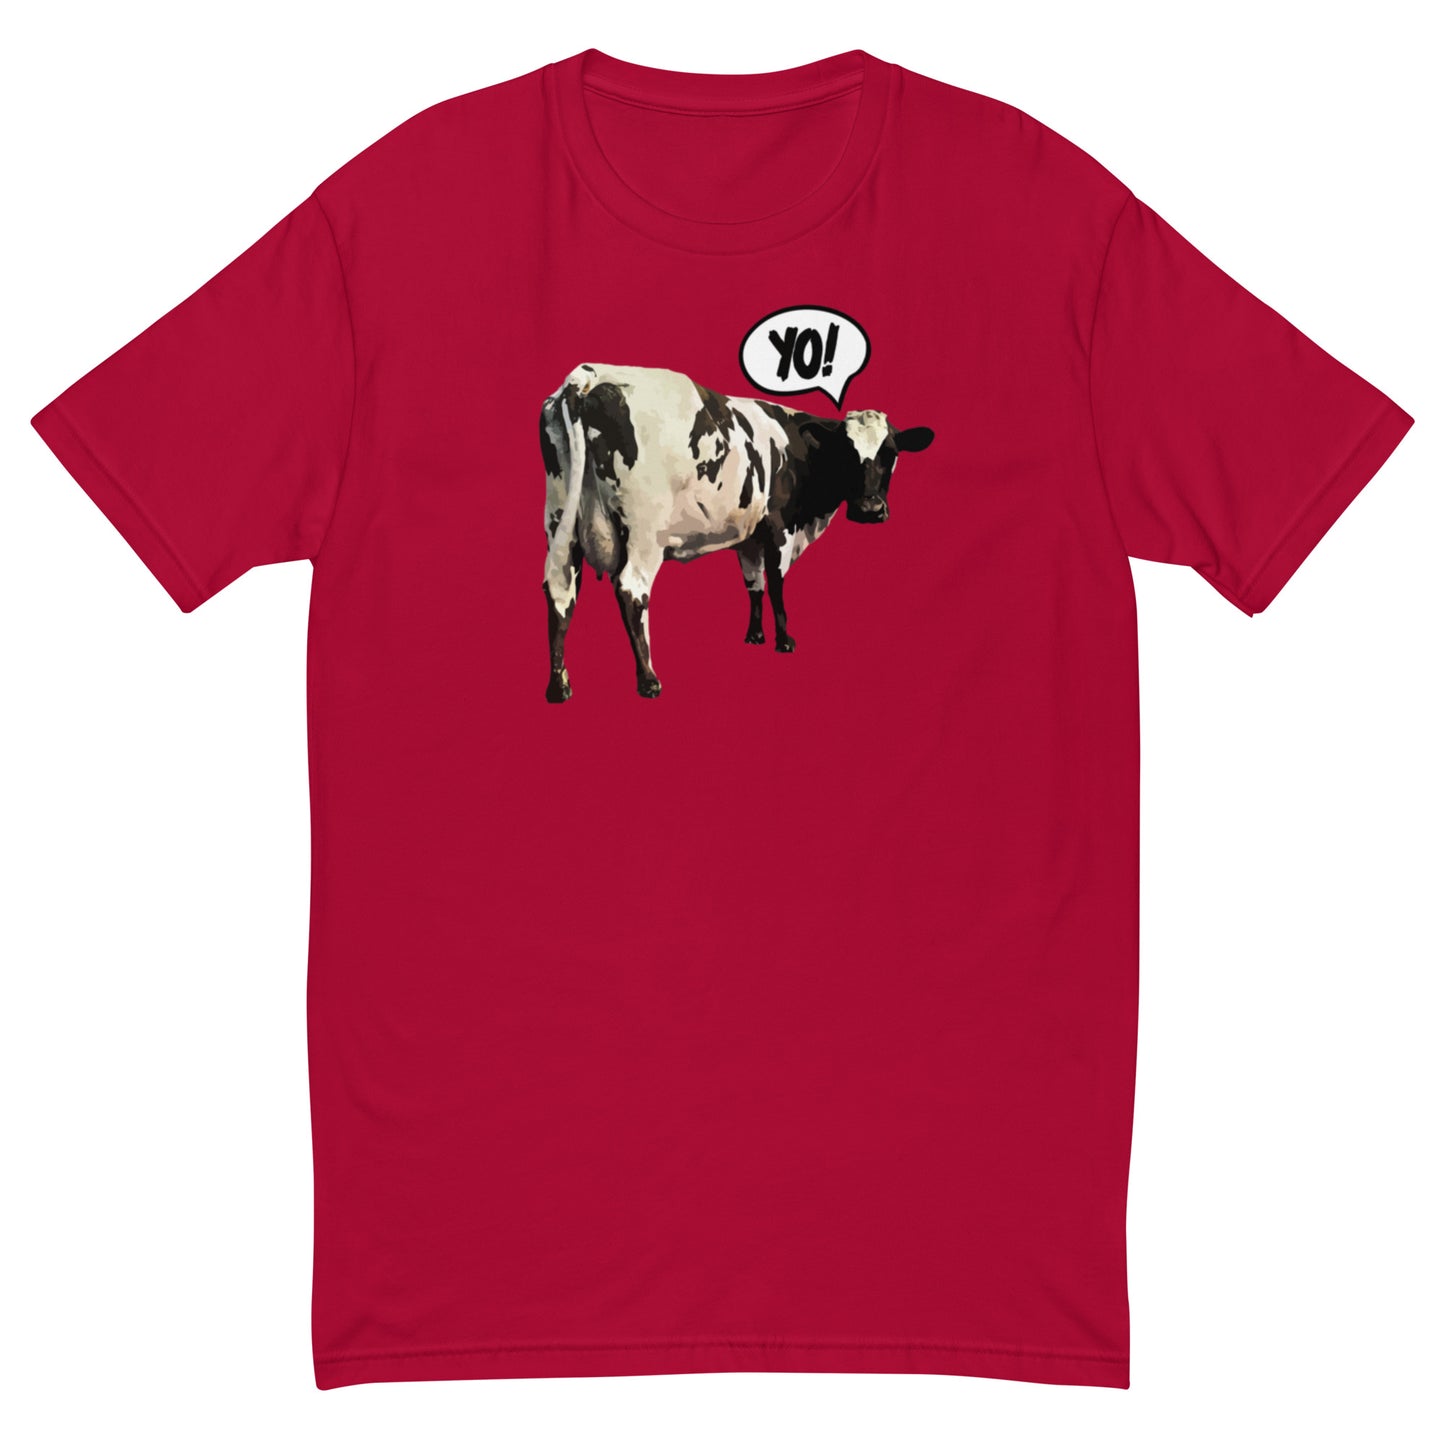 "Yo!" Cow Short Sleeve T-shirt